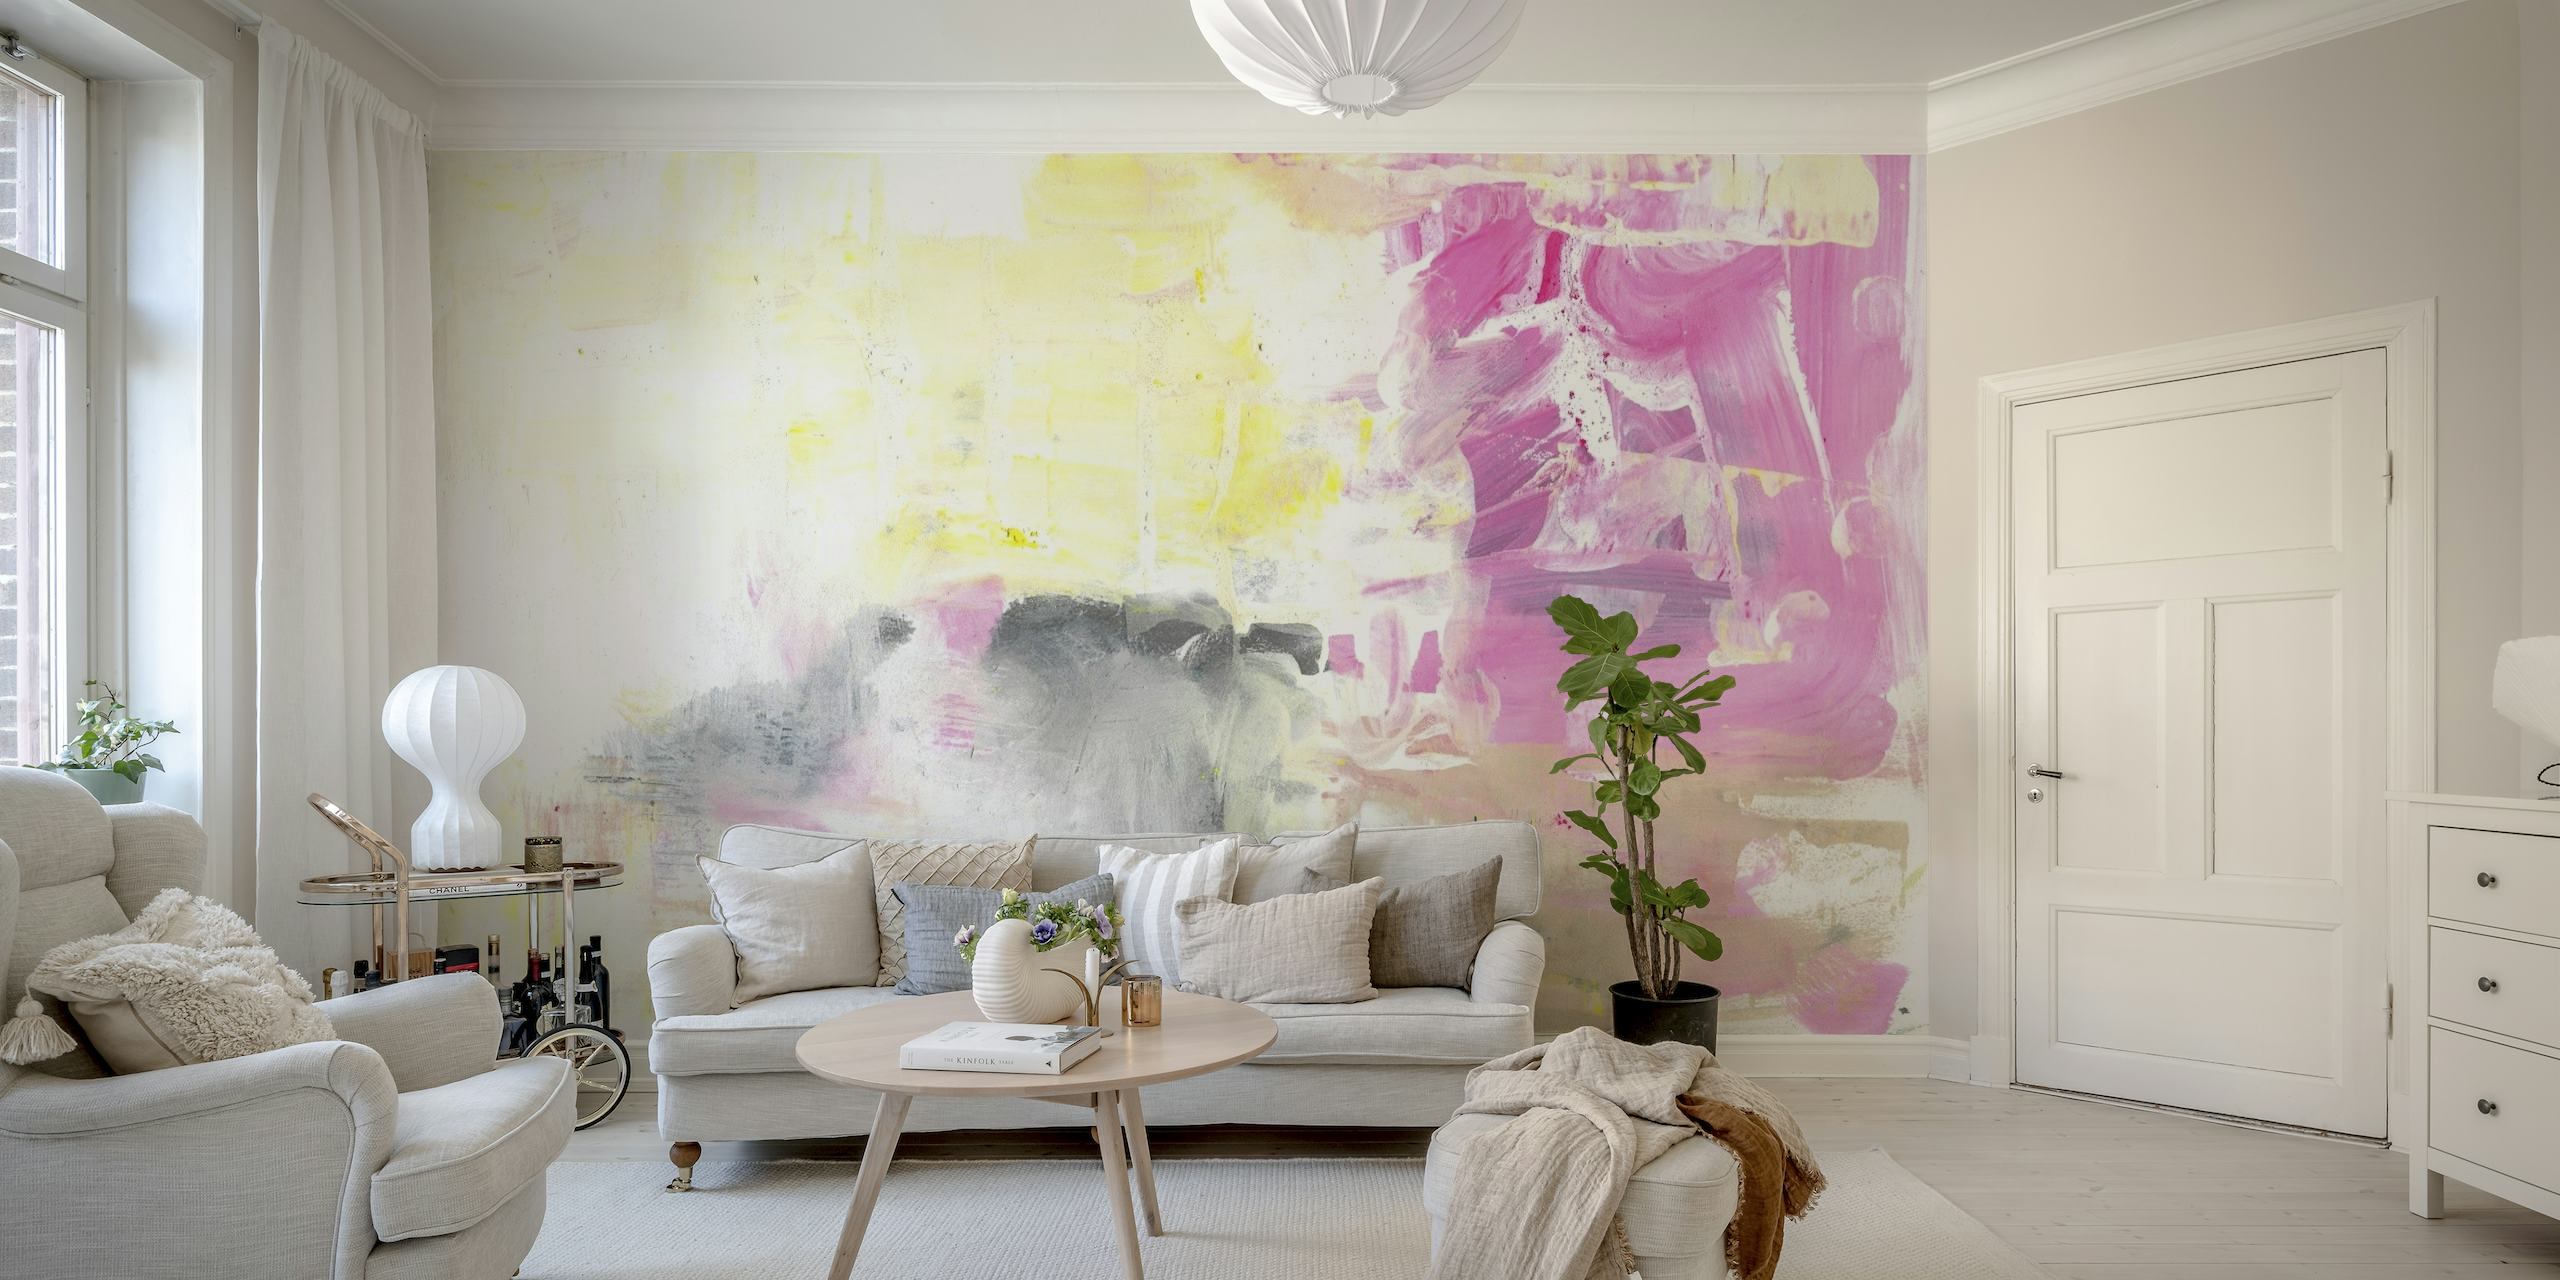 Apstraktna slika br. 17 zidni mural s nježno ružičastim, sivim i bijelim tonovima s izražajnim kistom